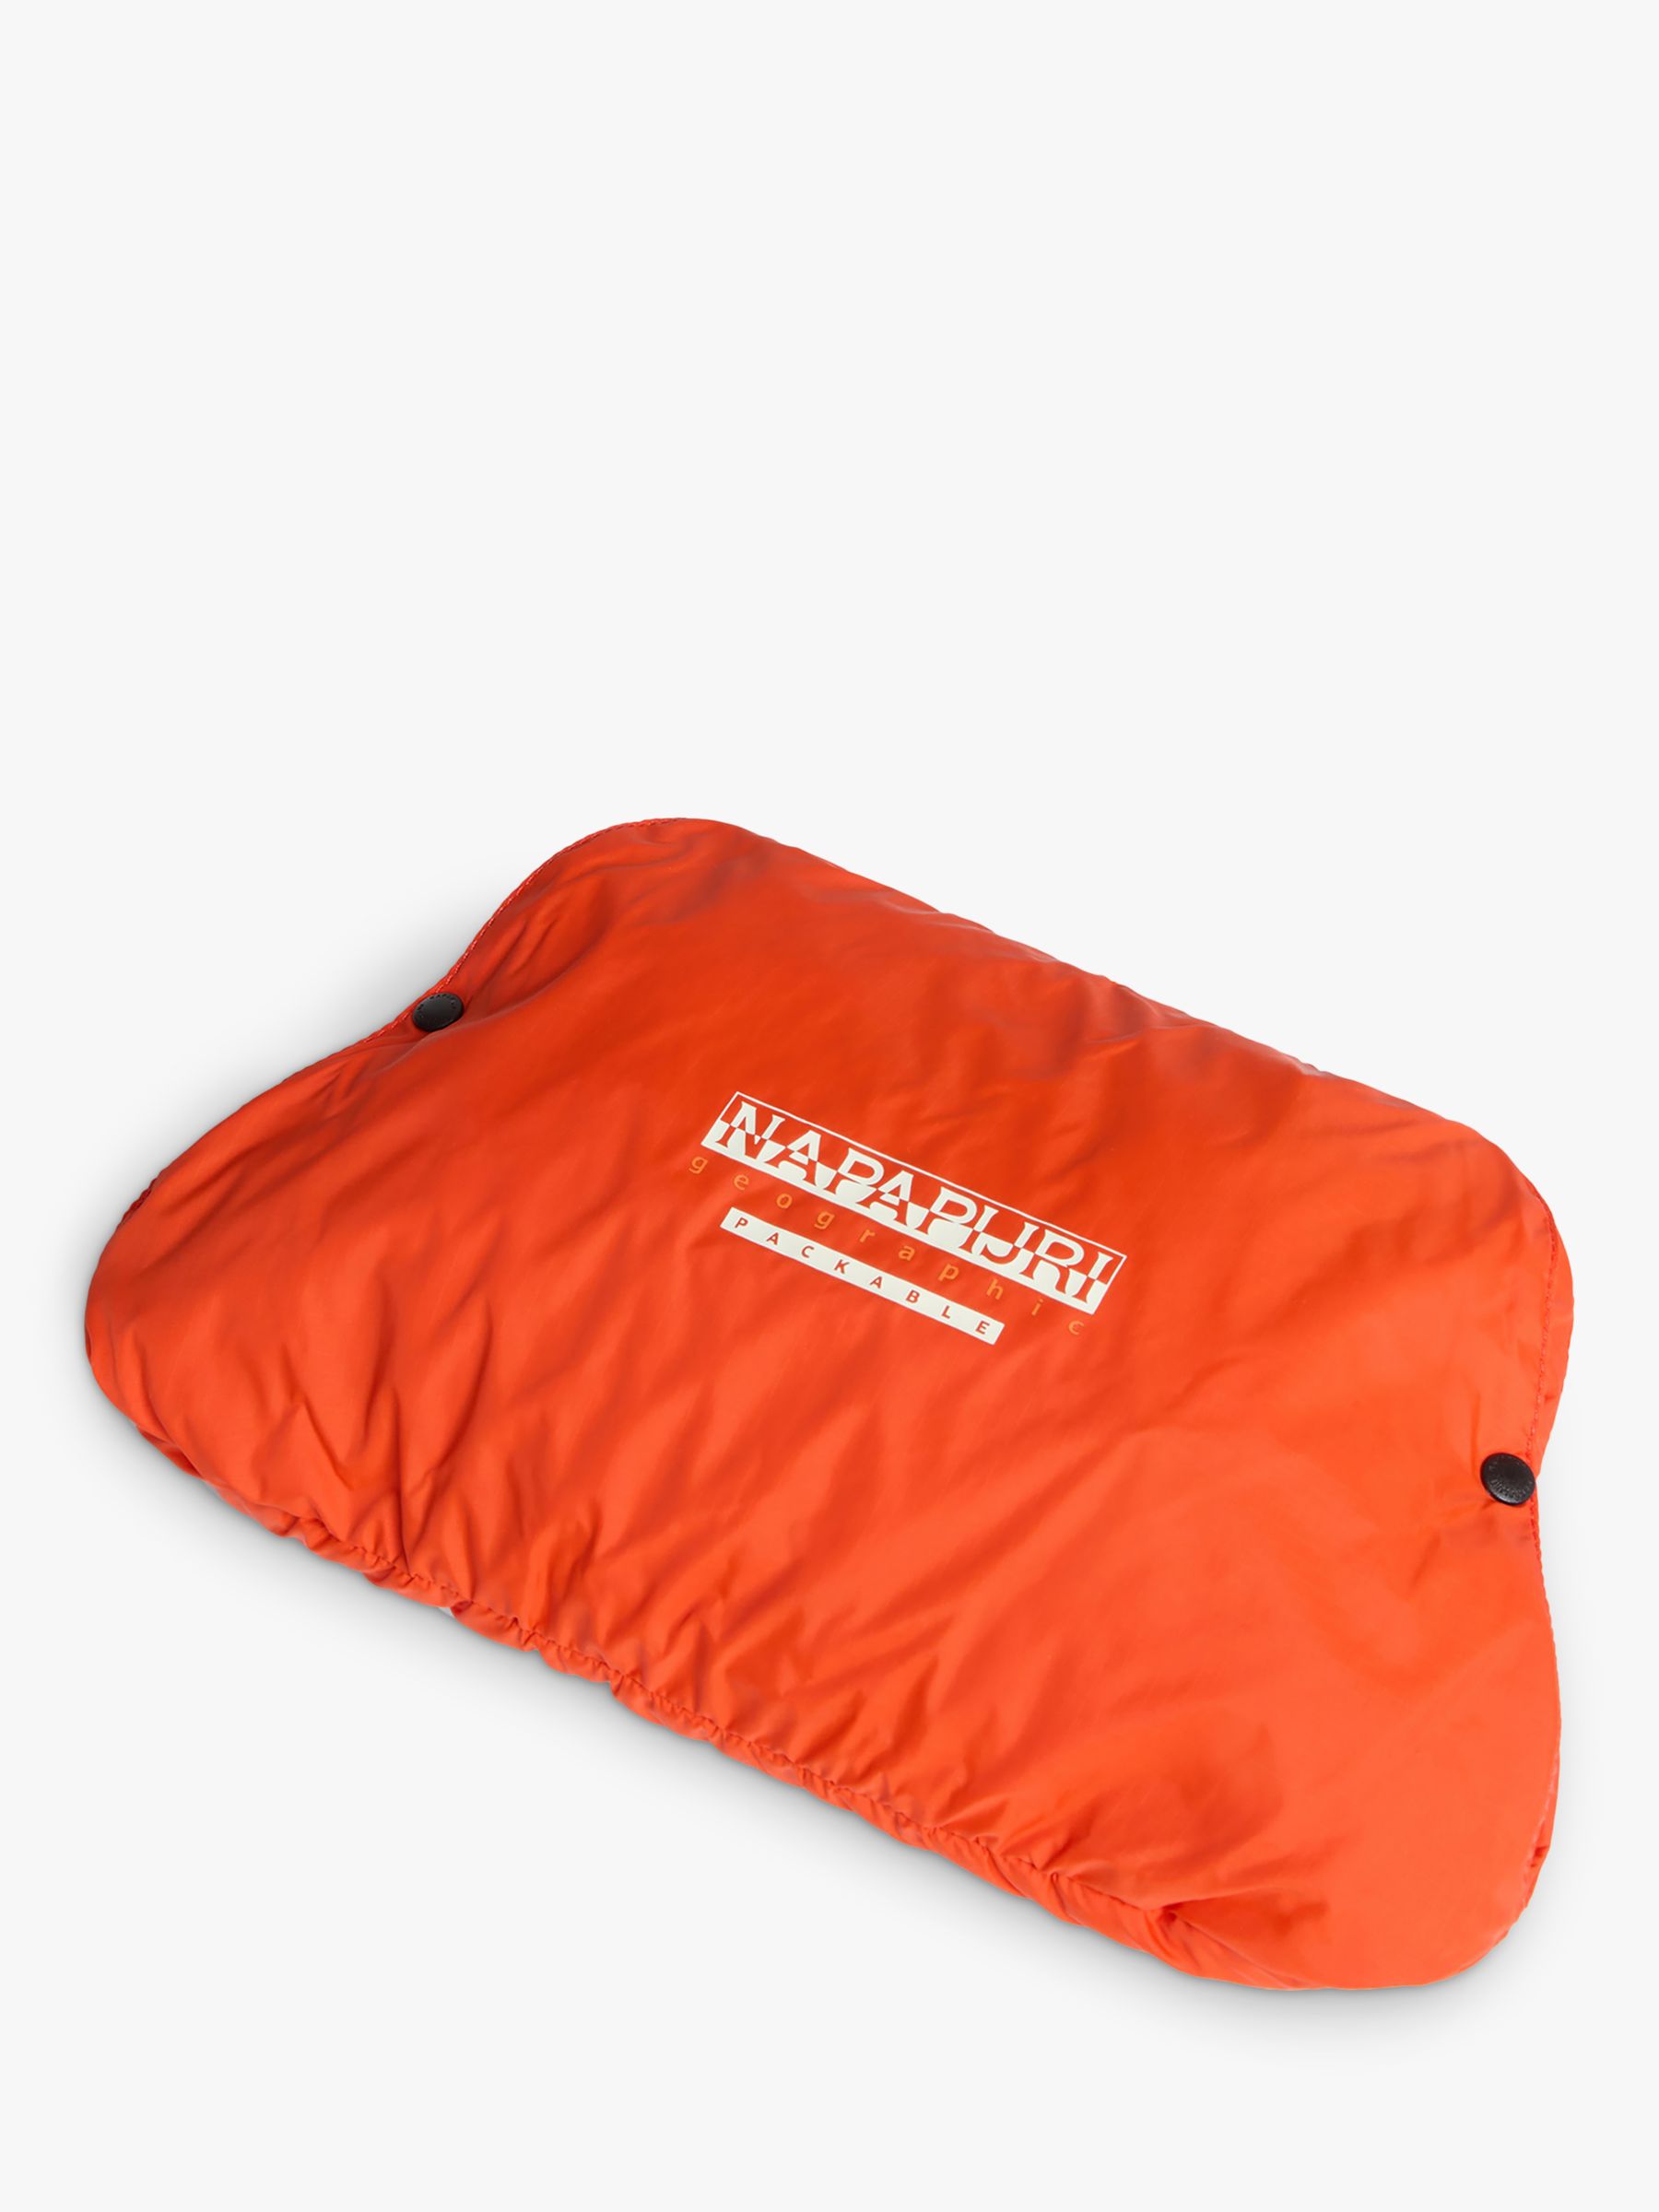 Buy Napapijri Kids' Cree Packable Hooded Windbreaker Jacket, Orange Online at johnlewis.com